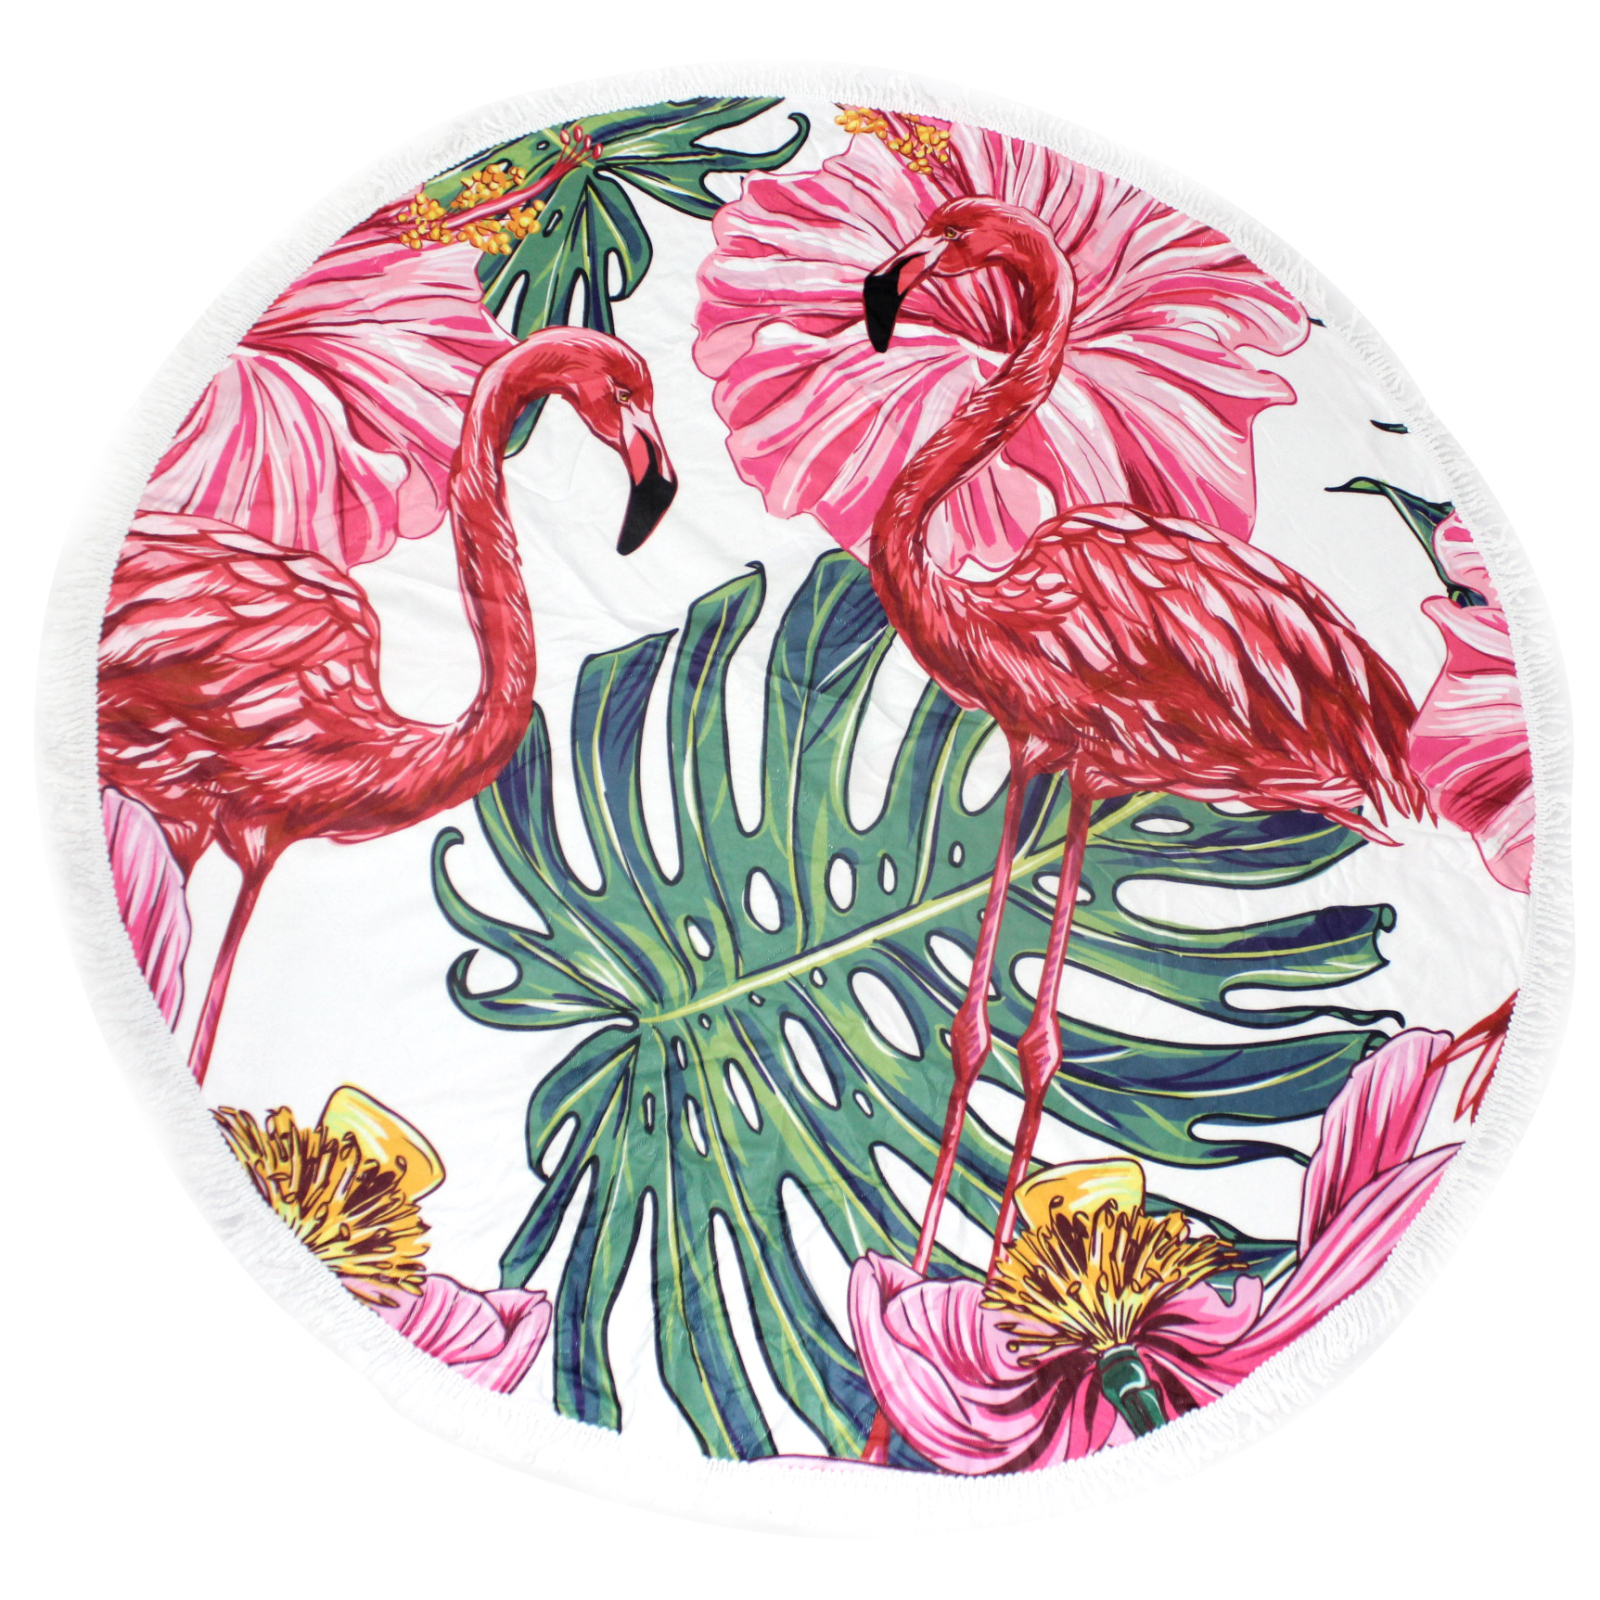 Полотенце MirSon пляжное №5070 Summer Time Flaminge Coats 150x150 см (2200003947786)